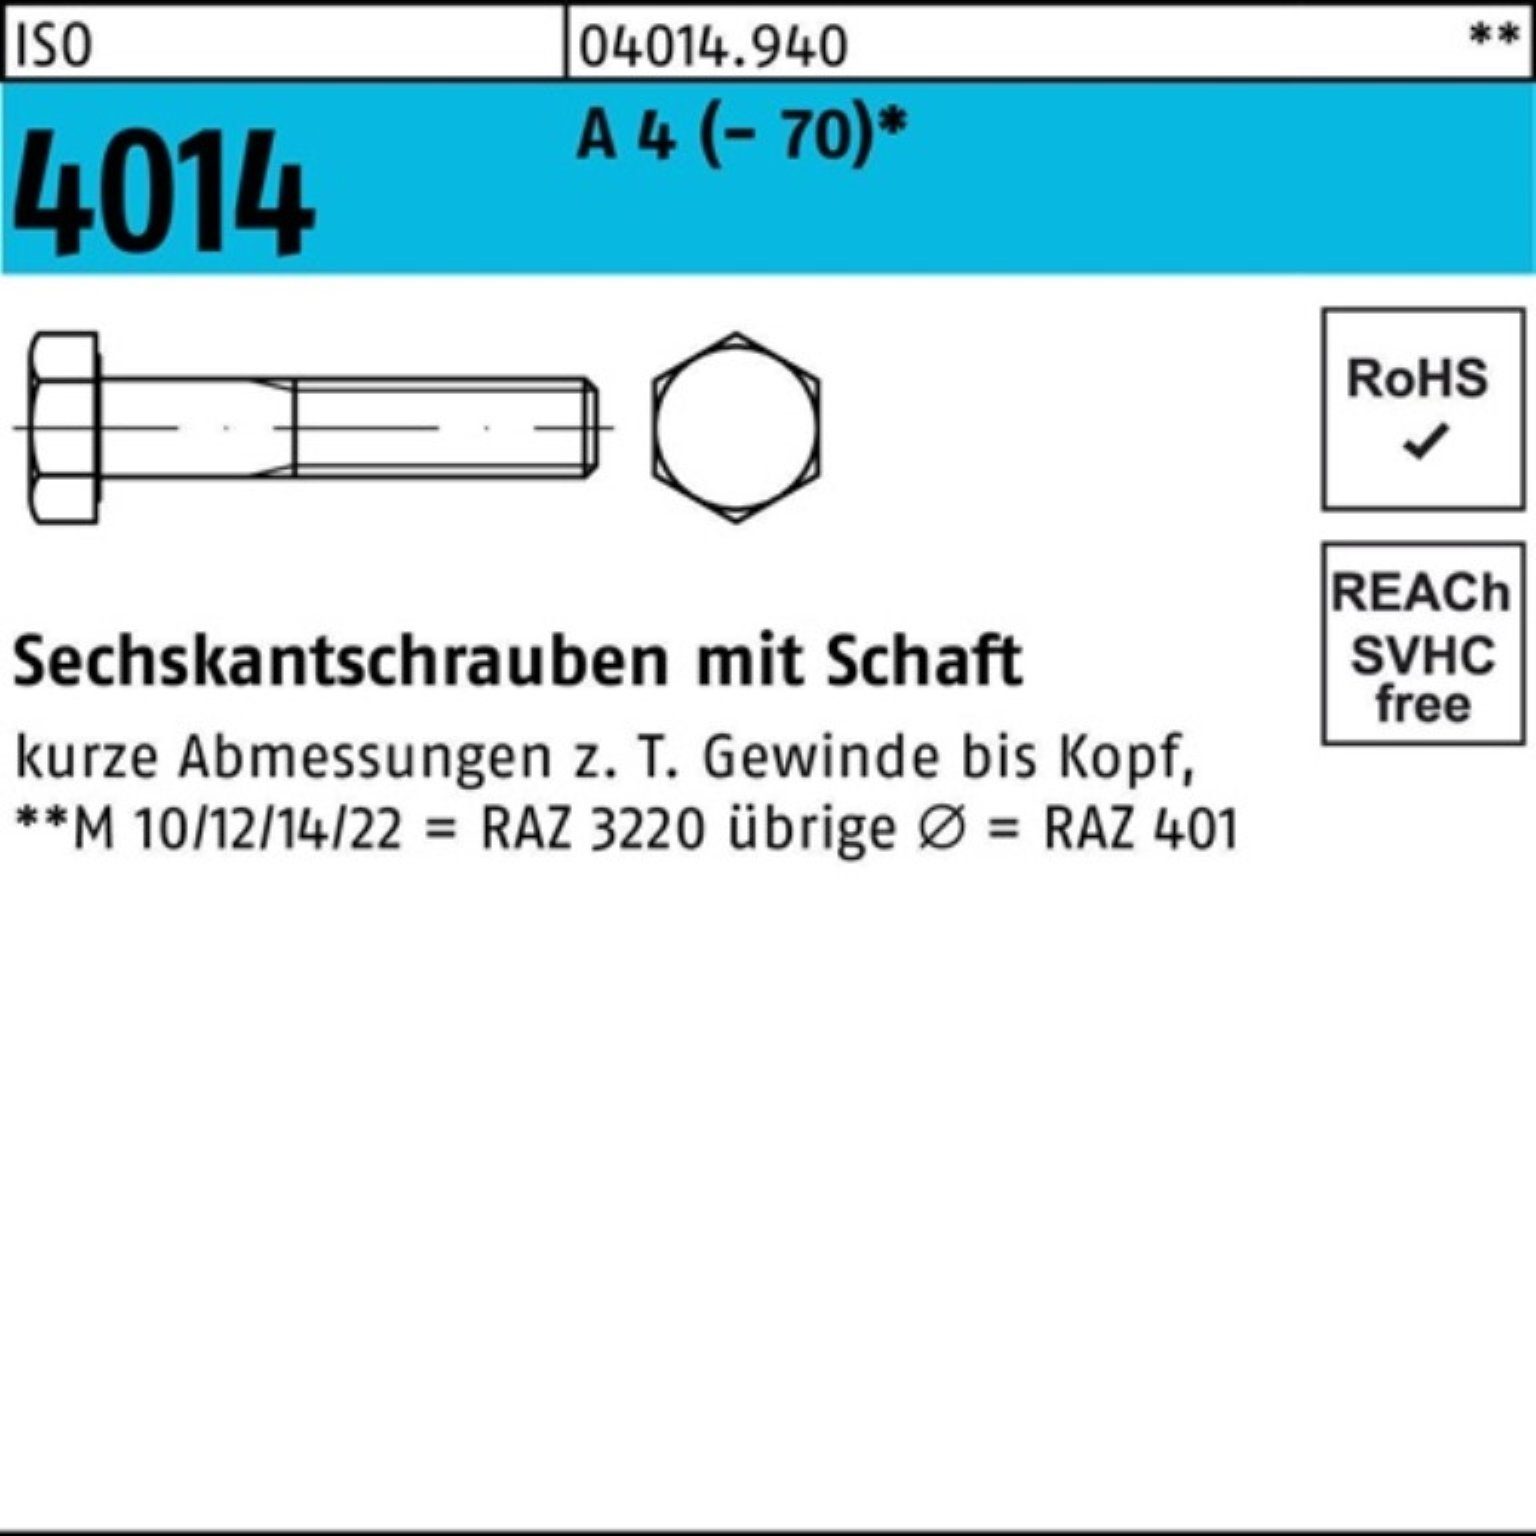 Bufab Sechskantschraube 100er Pack Sechskantschraube ISO 4014 Schaft M6x 55 A 4 (70) 100 St